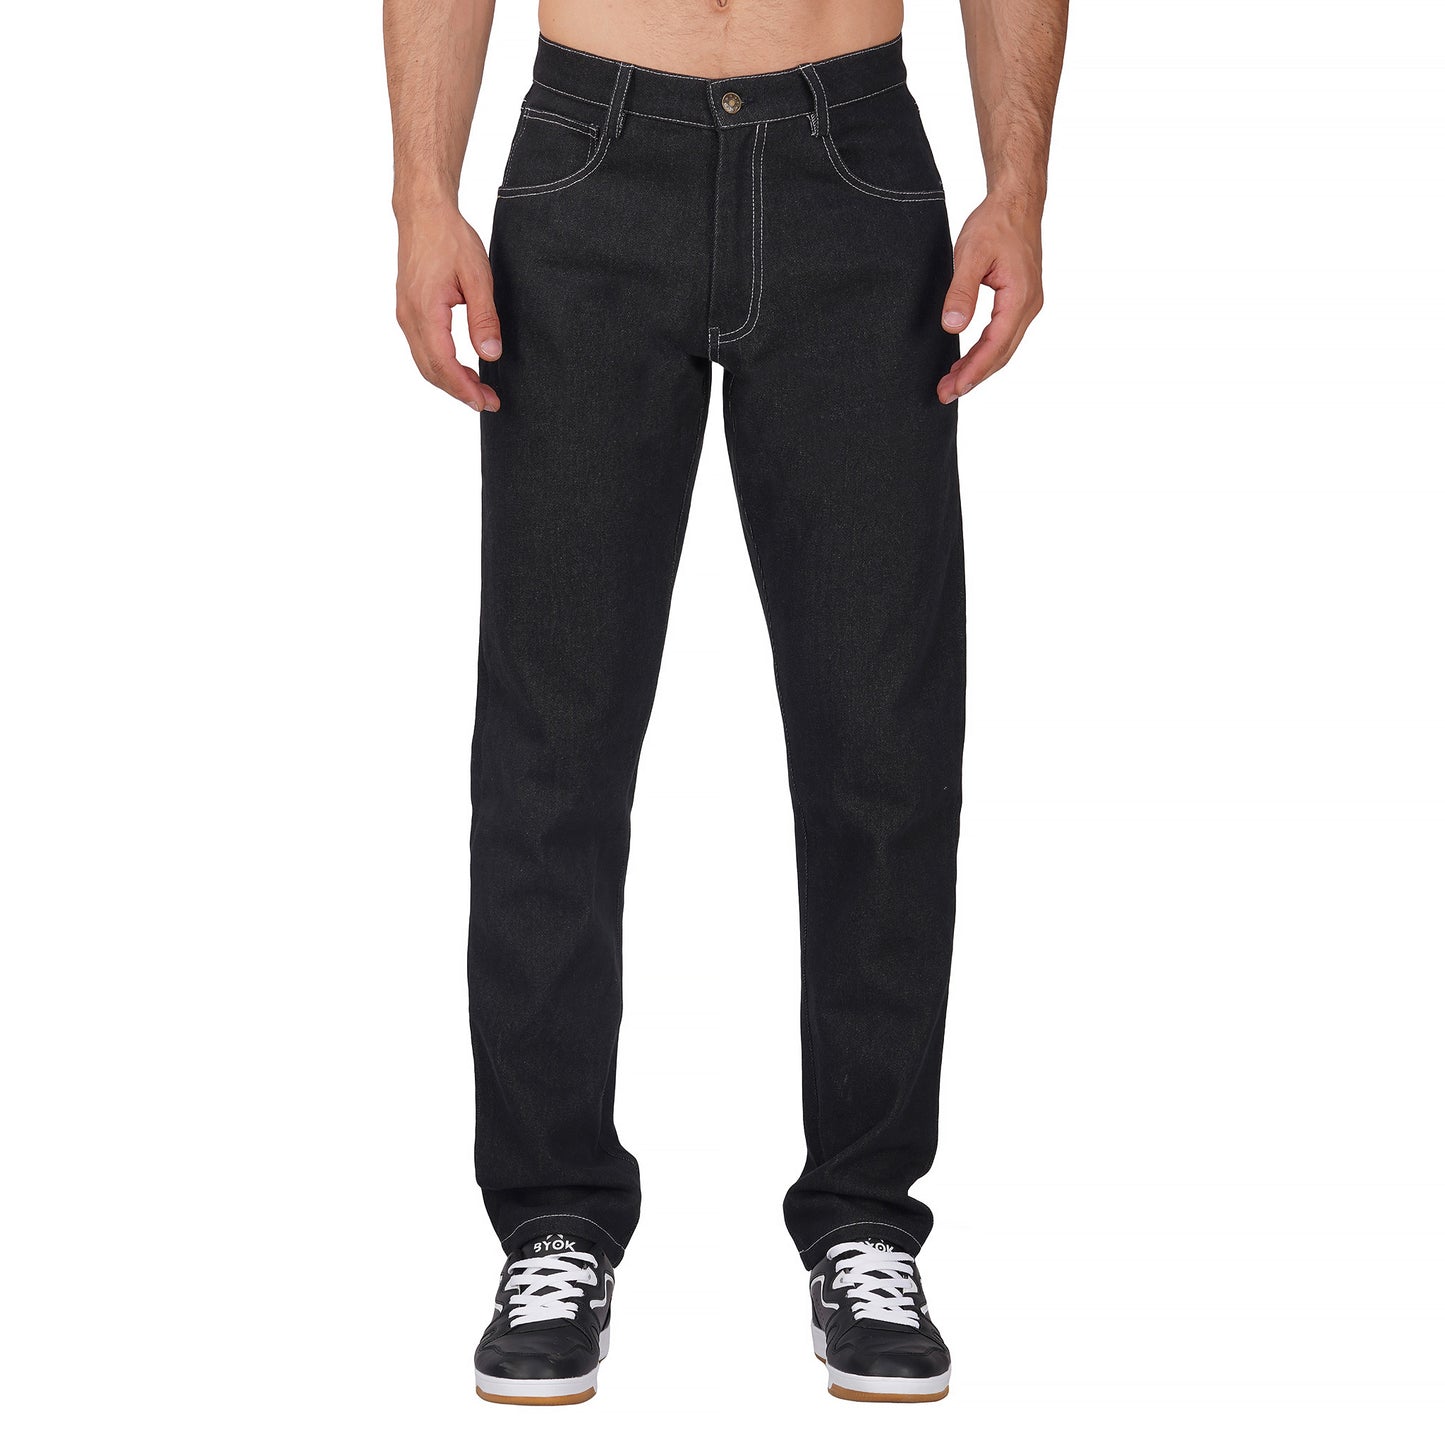 SLAY. Men's Black Denim Jacket & Jeans Co-ord Set